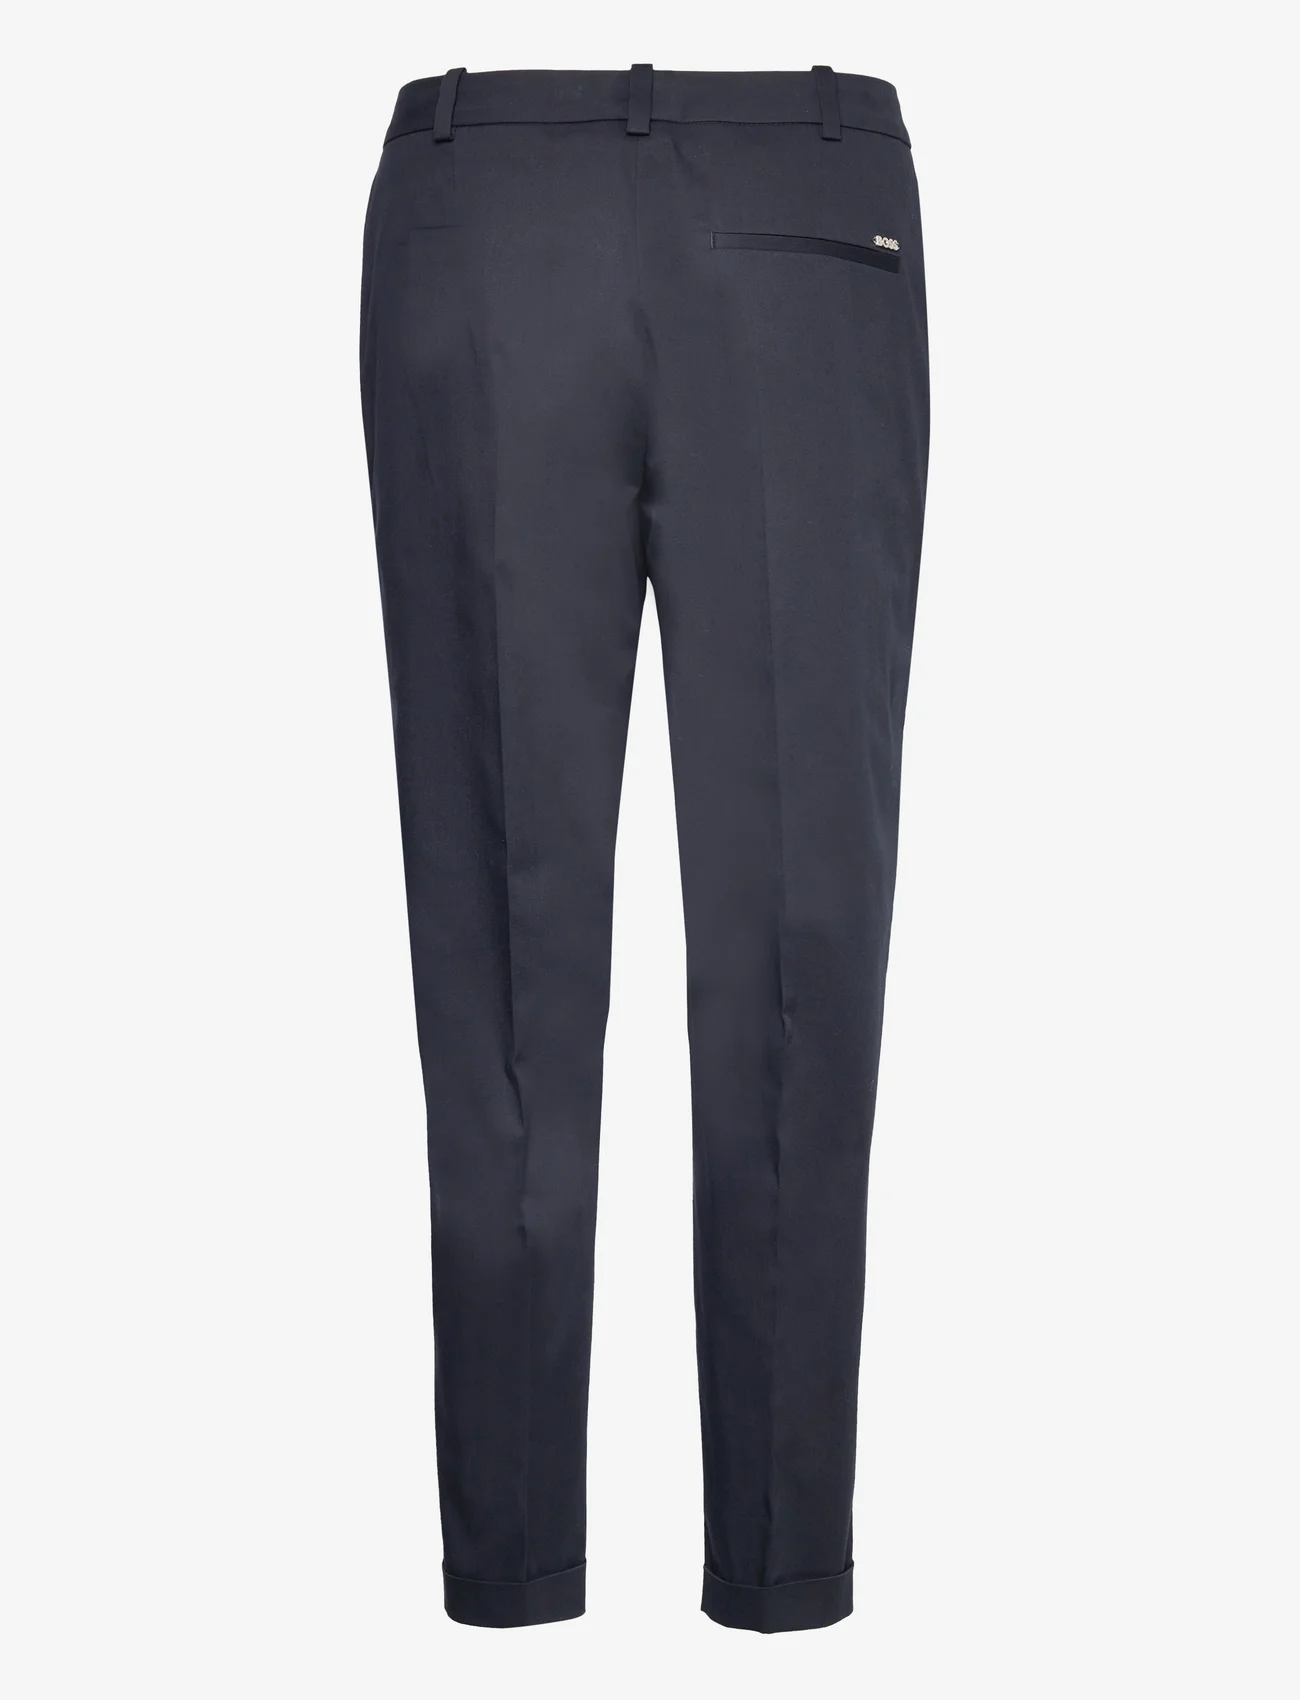 BOSS - Tachinoa - slim fit trousers - dark blue - 1